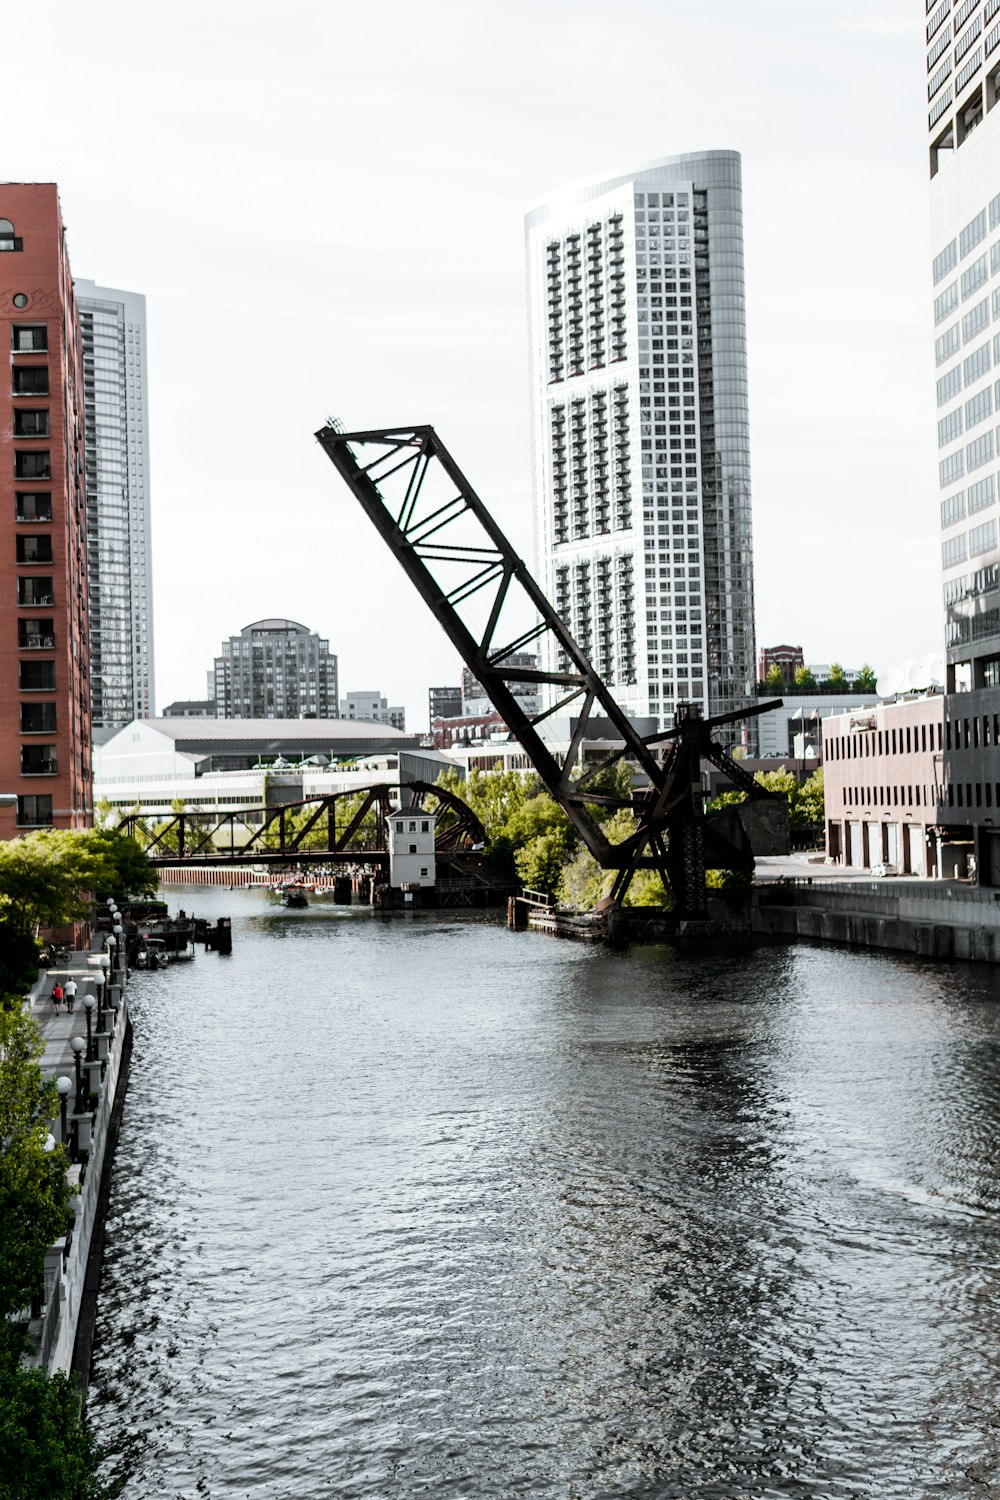 Puente cruzado de metal negro en el río durante el día